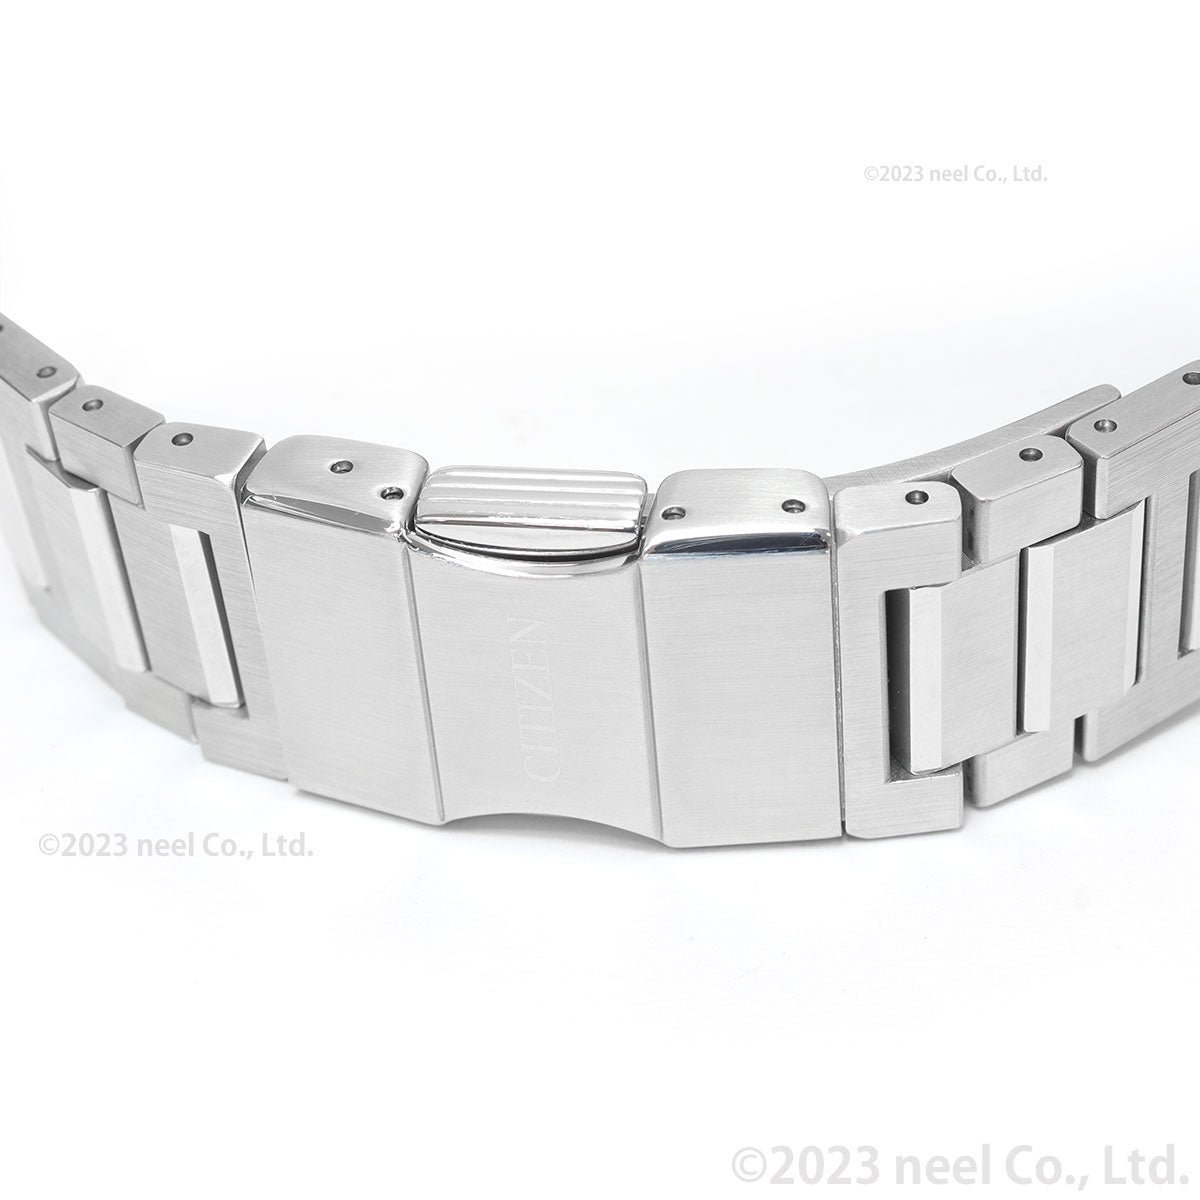 【36回分割手数料無料！】シチズン シリーズエイト CITIZEN Series 8 メカニカル 880 自動巻き 機械式 腕時計 メンズ NB6031-56E